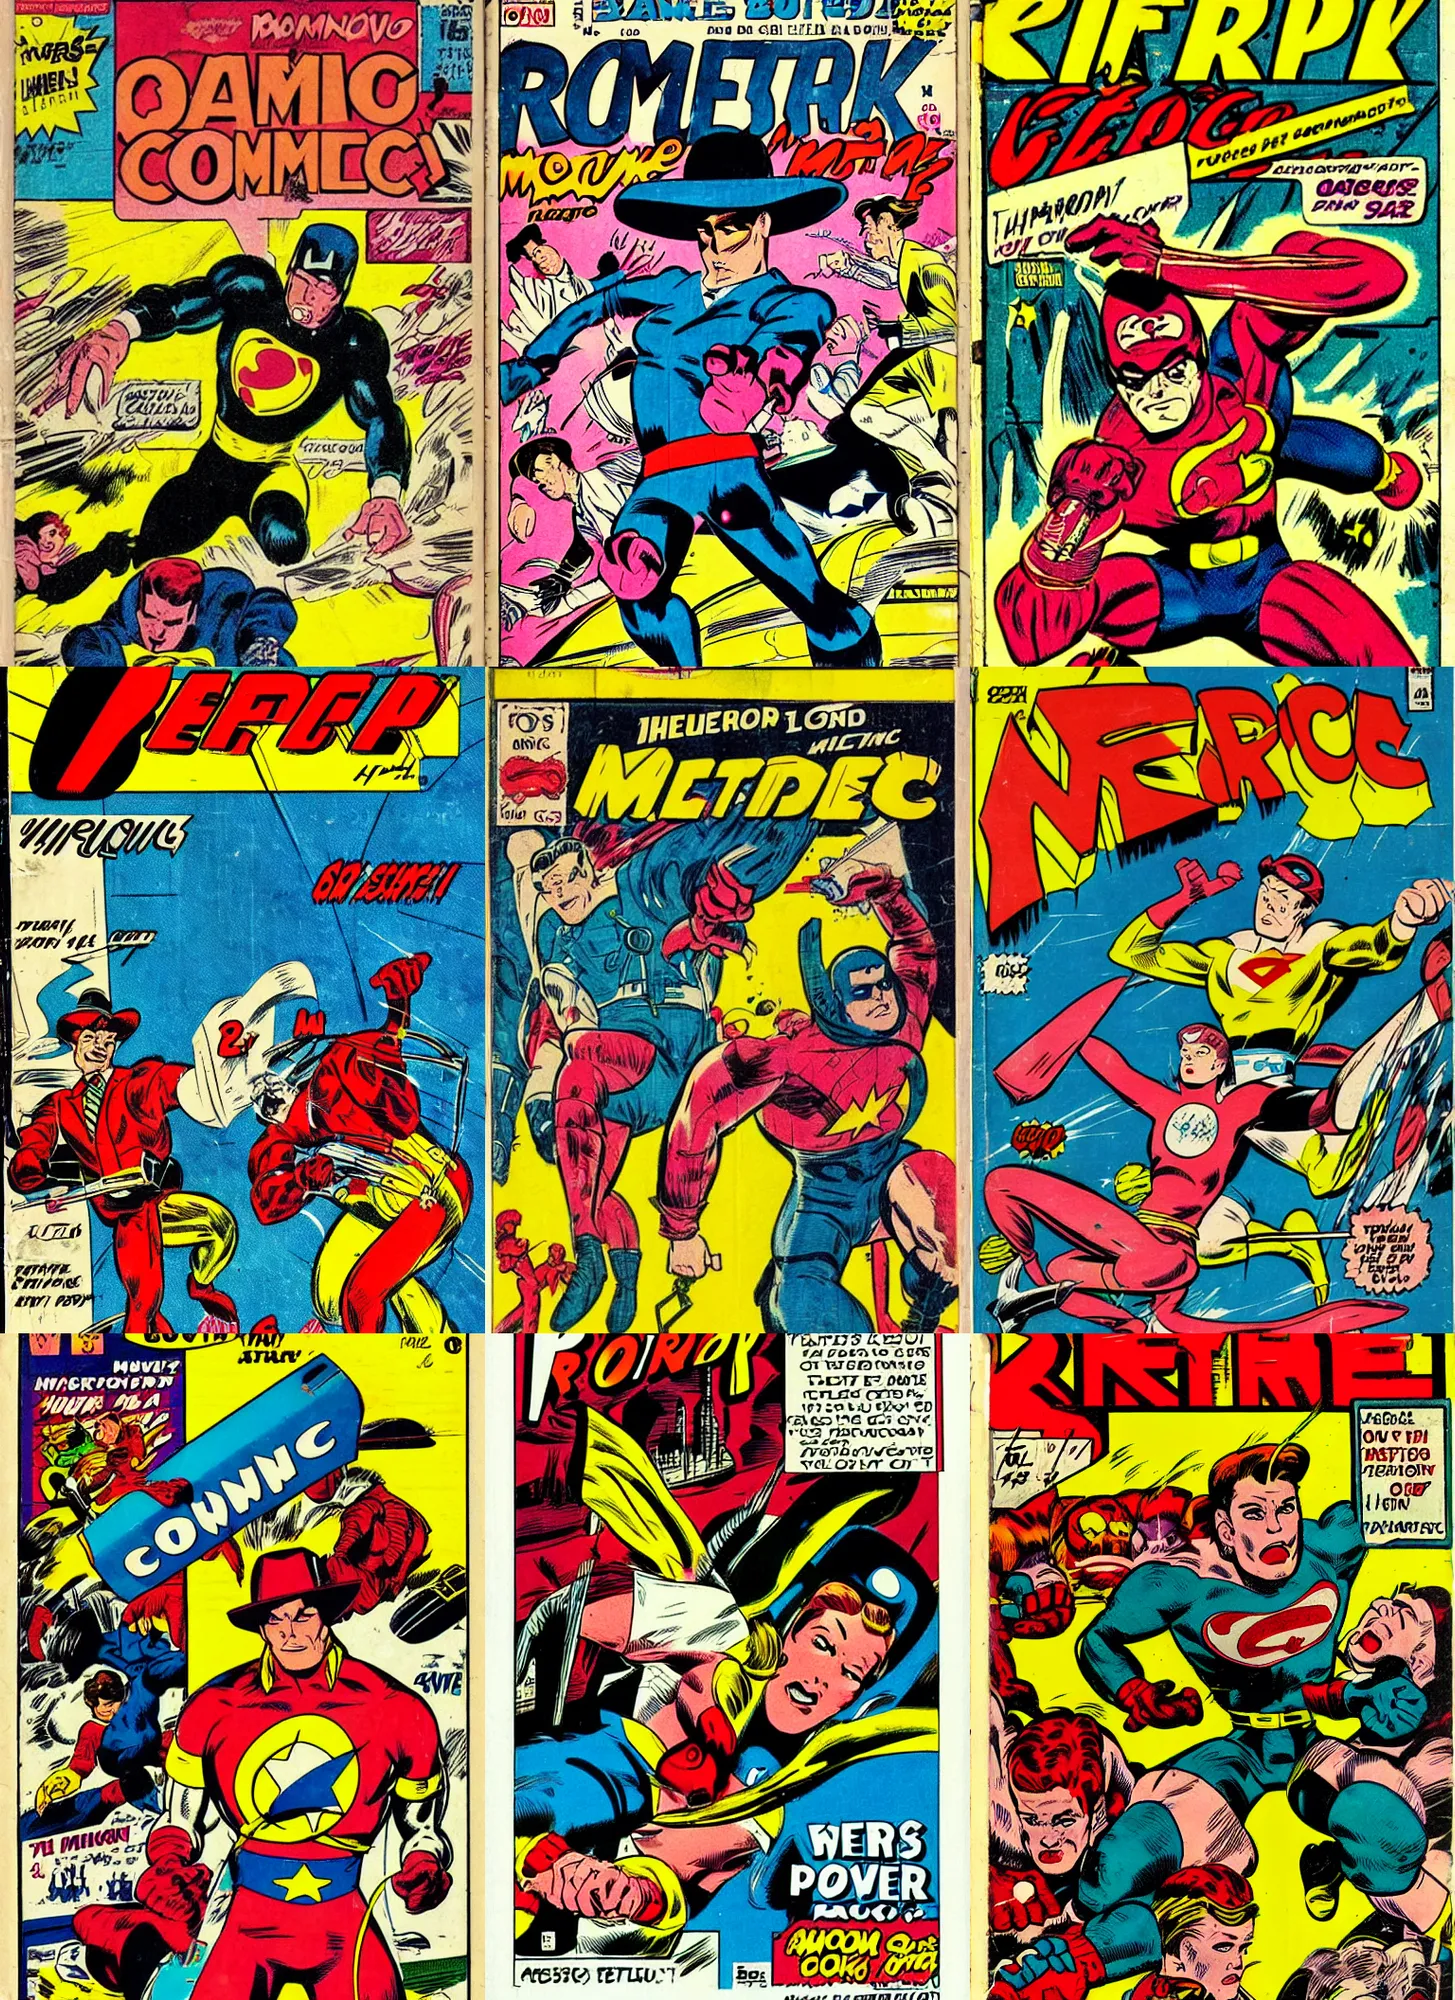 Prompt: retro comic book cover